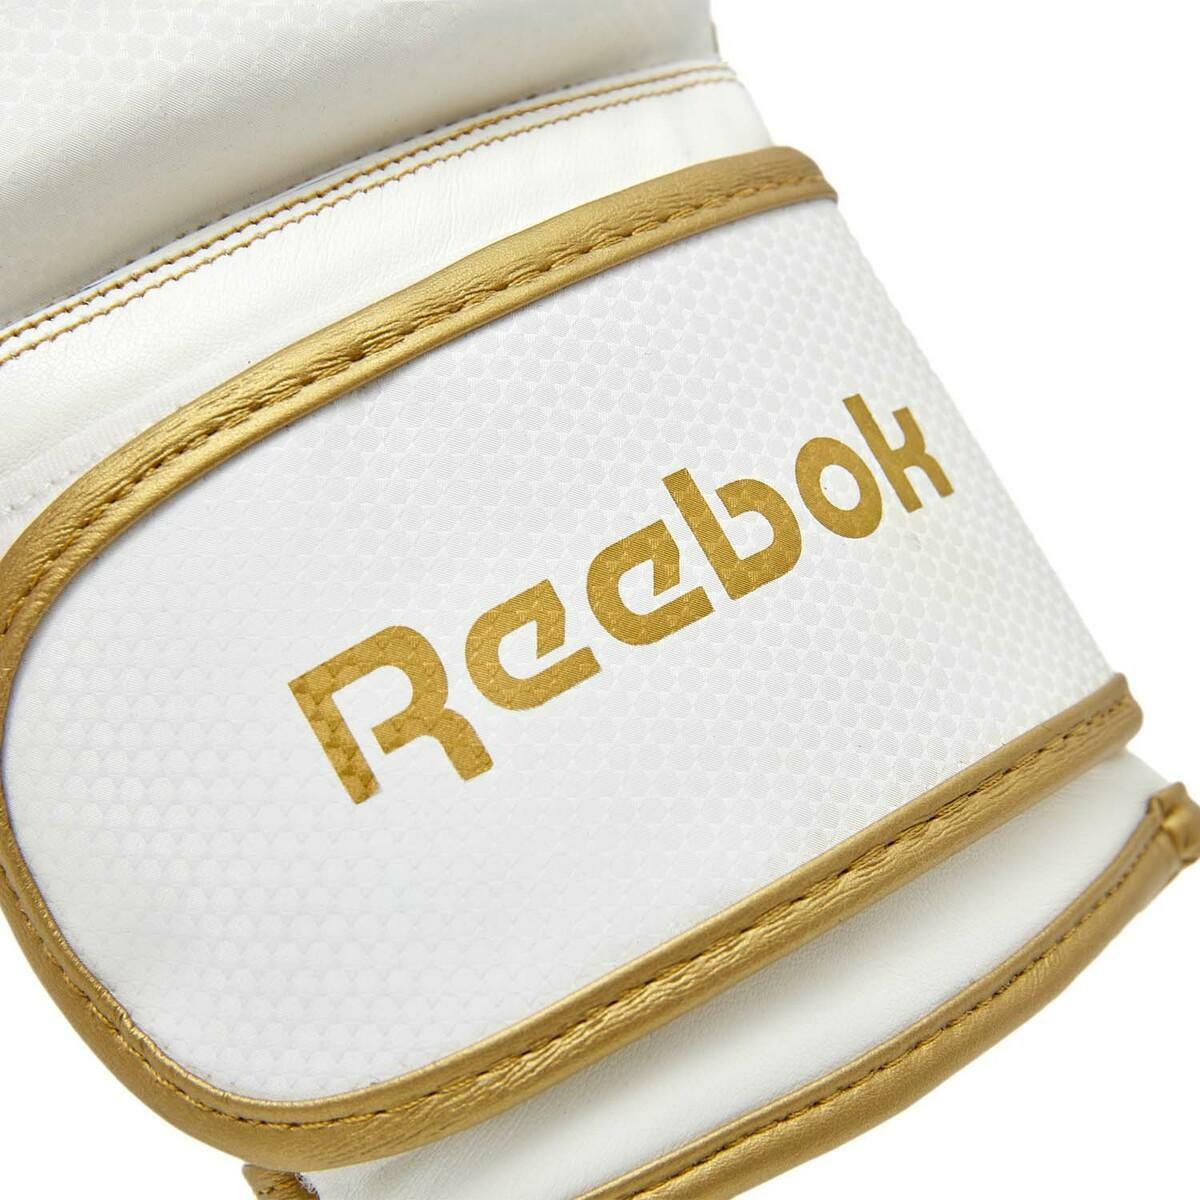 Reebok 12oz Boxing Gloves and Wraps Set PRSCB-11117